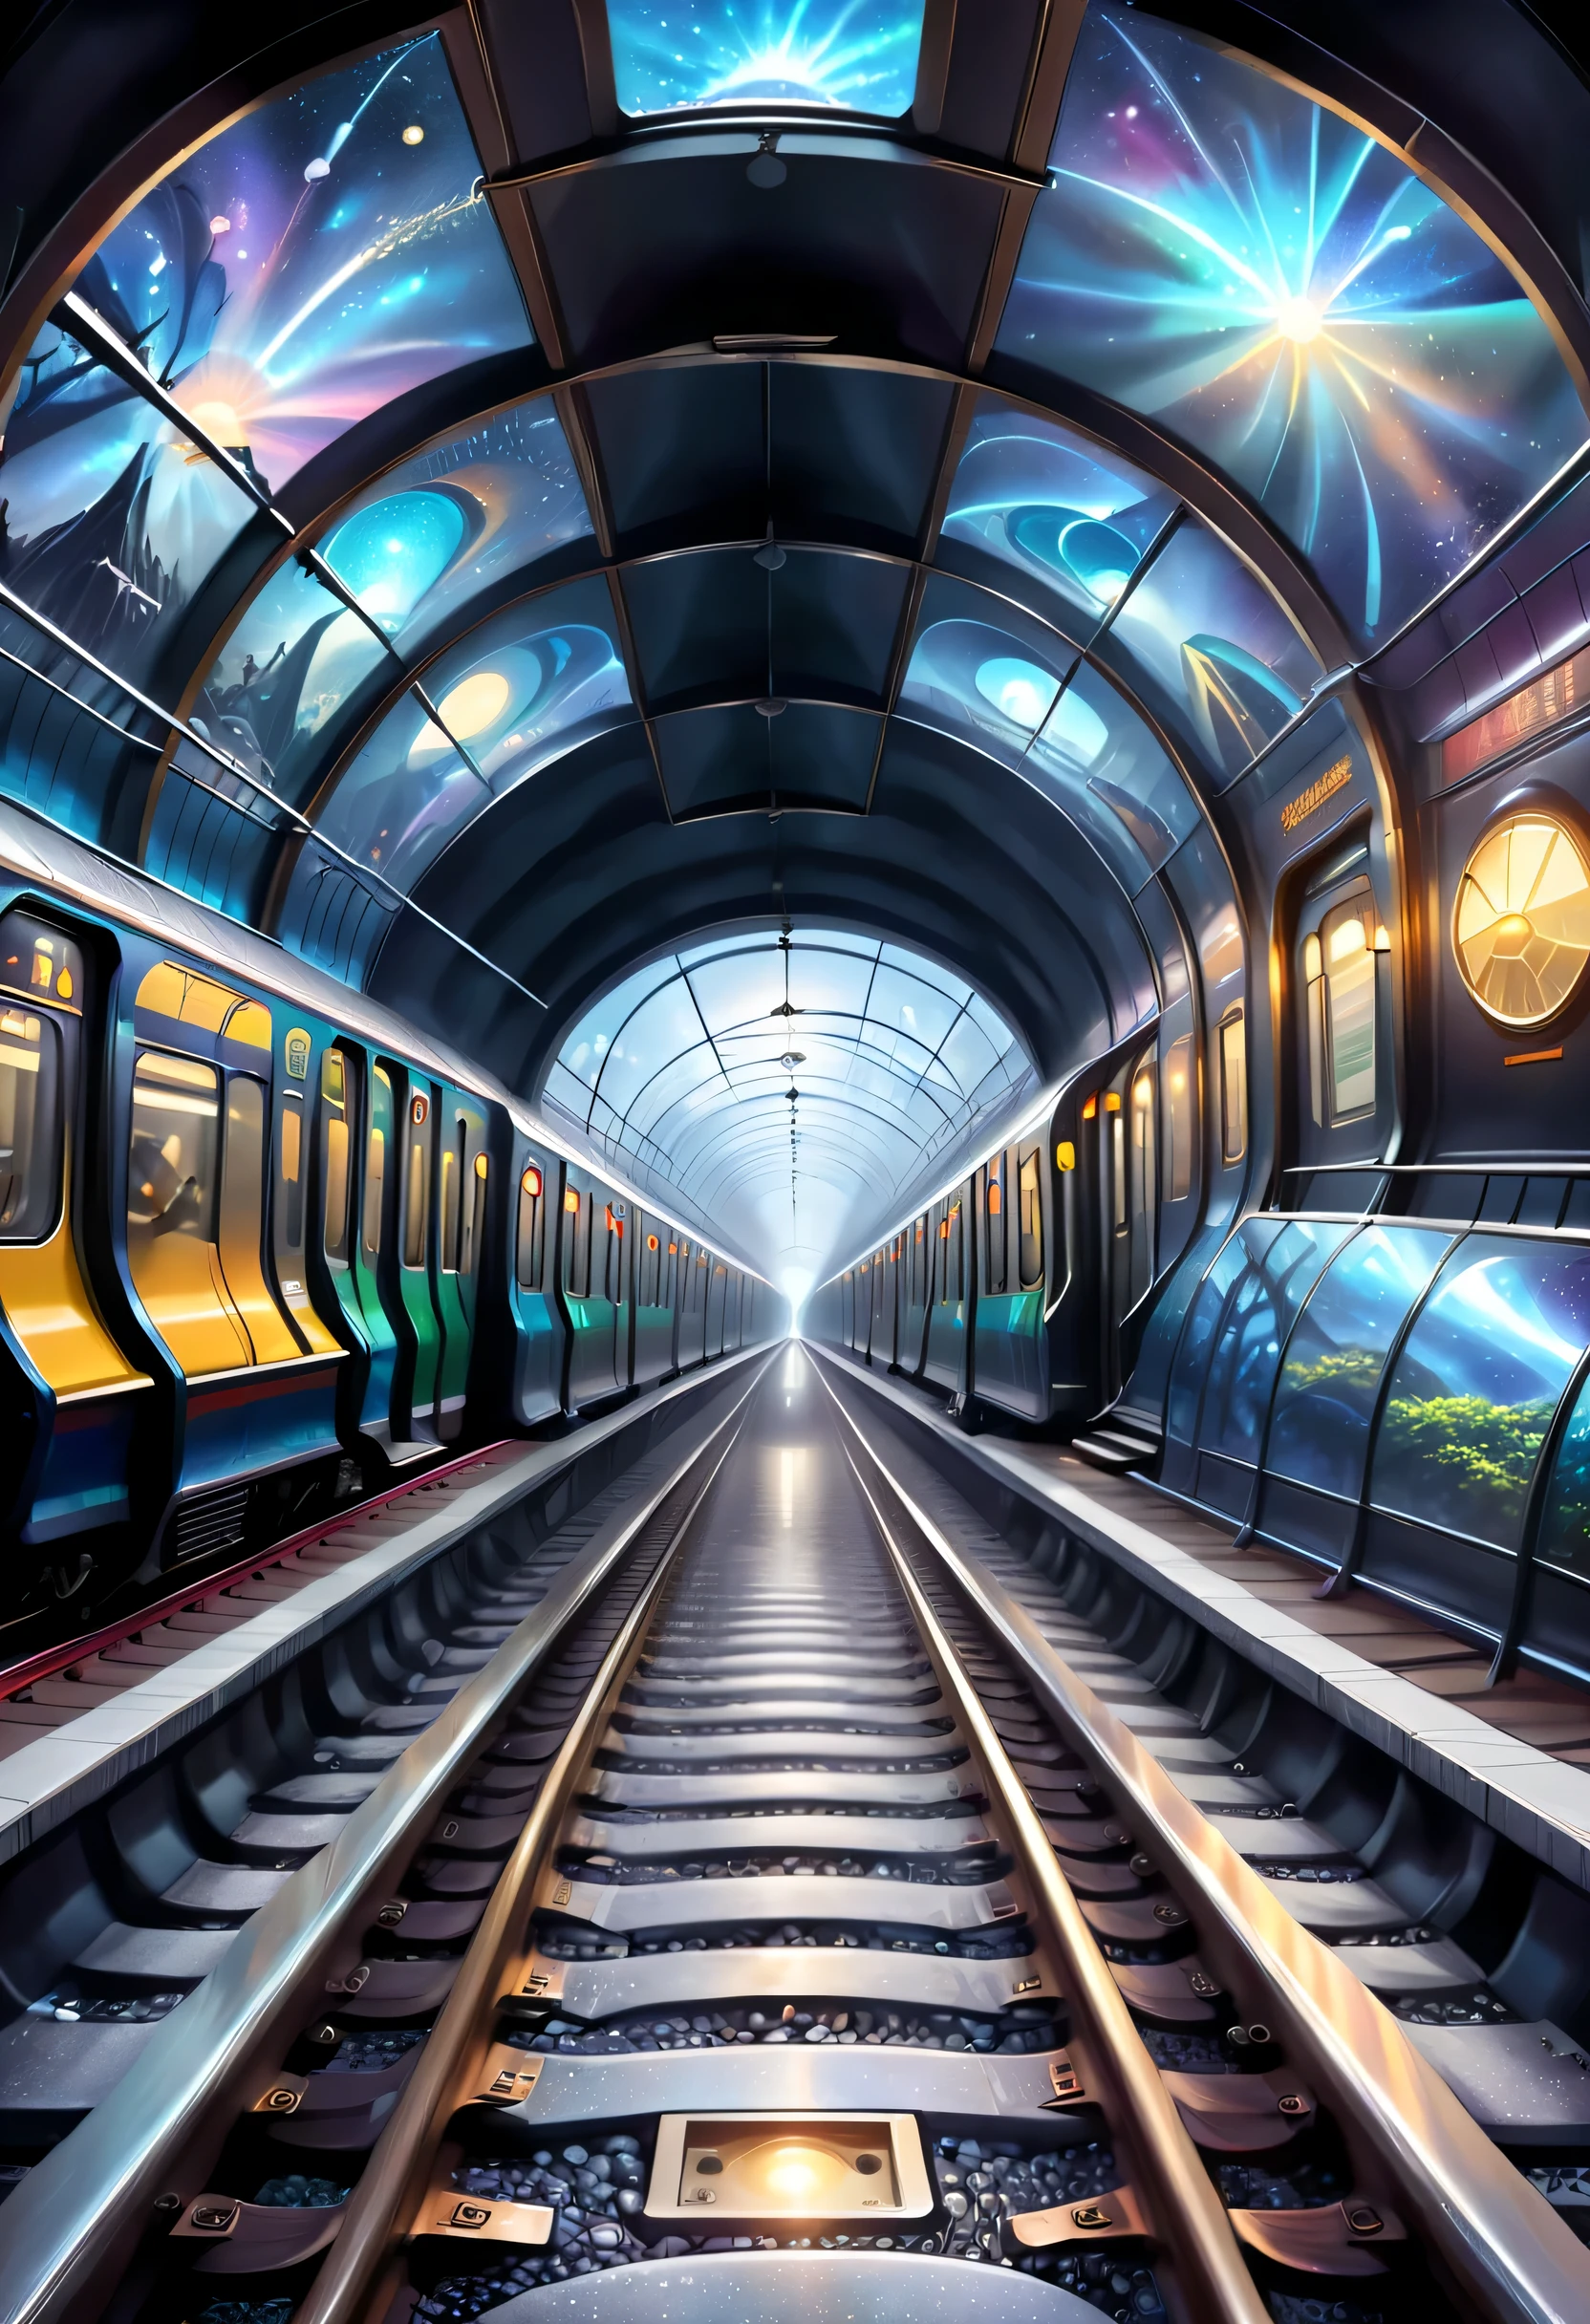 แสดงให้เห็นการเชื่อมต่อของรางรถไฟใต้ดินกับพื้นที่มิติอื่น。สามารถวาดอุโมงค์รถไฟใต้ดินได้，ส่วนหนึ่งนำไปสู่โลกมิติที่แตกต่าง，ภาพประกอบสามารถแสดงวิสัยทัศน์ที่แปลกประหลาดและผู้โดยสารจากมิติที่แตกต่างกัน。รถไฟสตาร์โดมทำหน้าที่เป็นทางผ่านระหว่างโลกปกติกับอีกมิติหนึ่ง，นำเสนอบรรยากาศลึกลับและน่าหลงใหล。